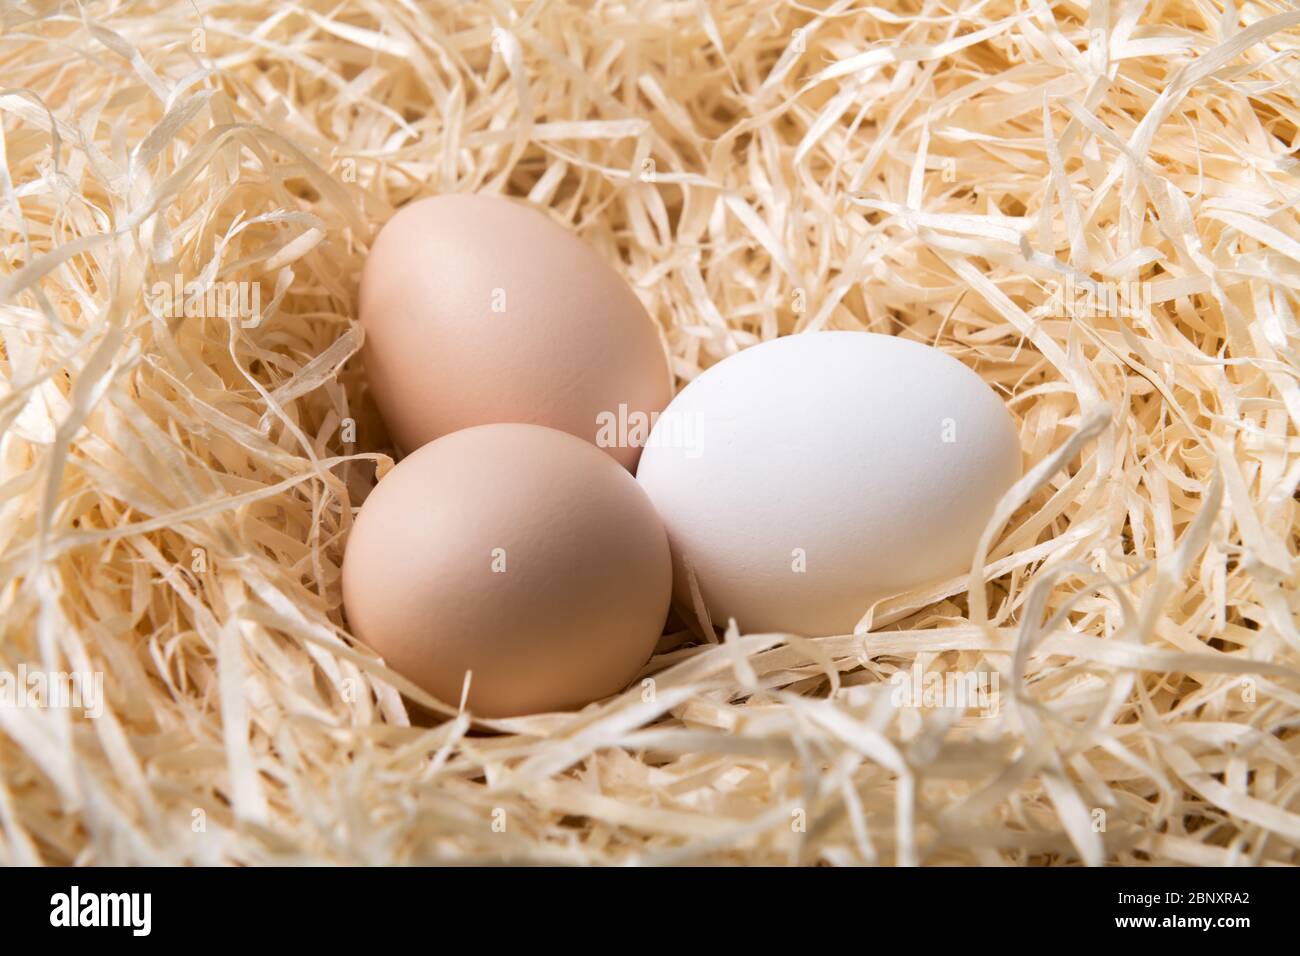 Œufs de poulet biologiques dans la fermeture du nid. Photographie alimentaire Banque D'Images